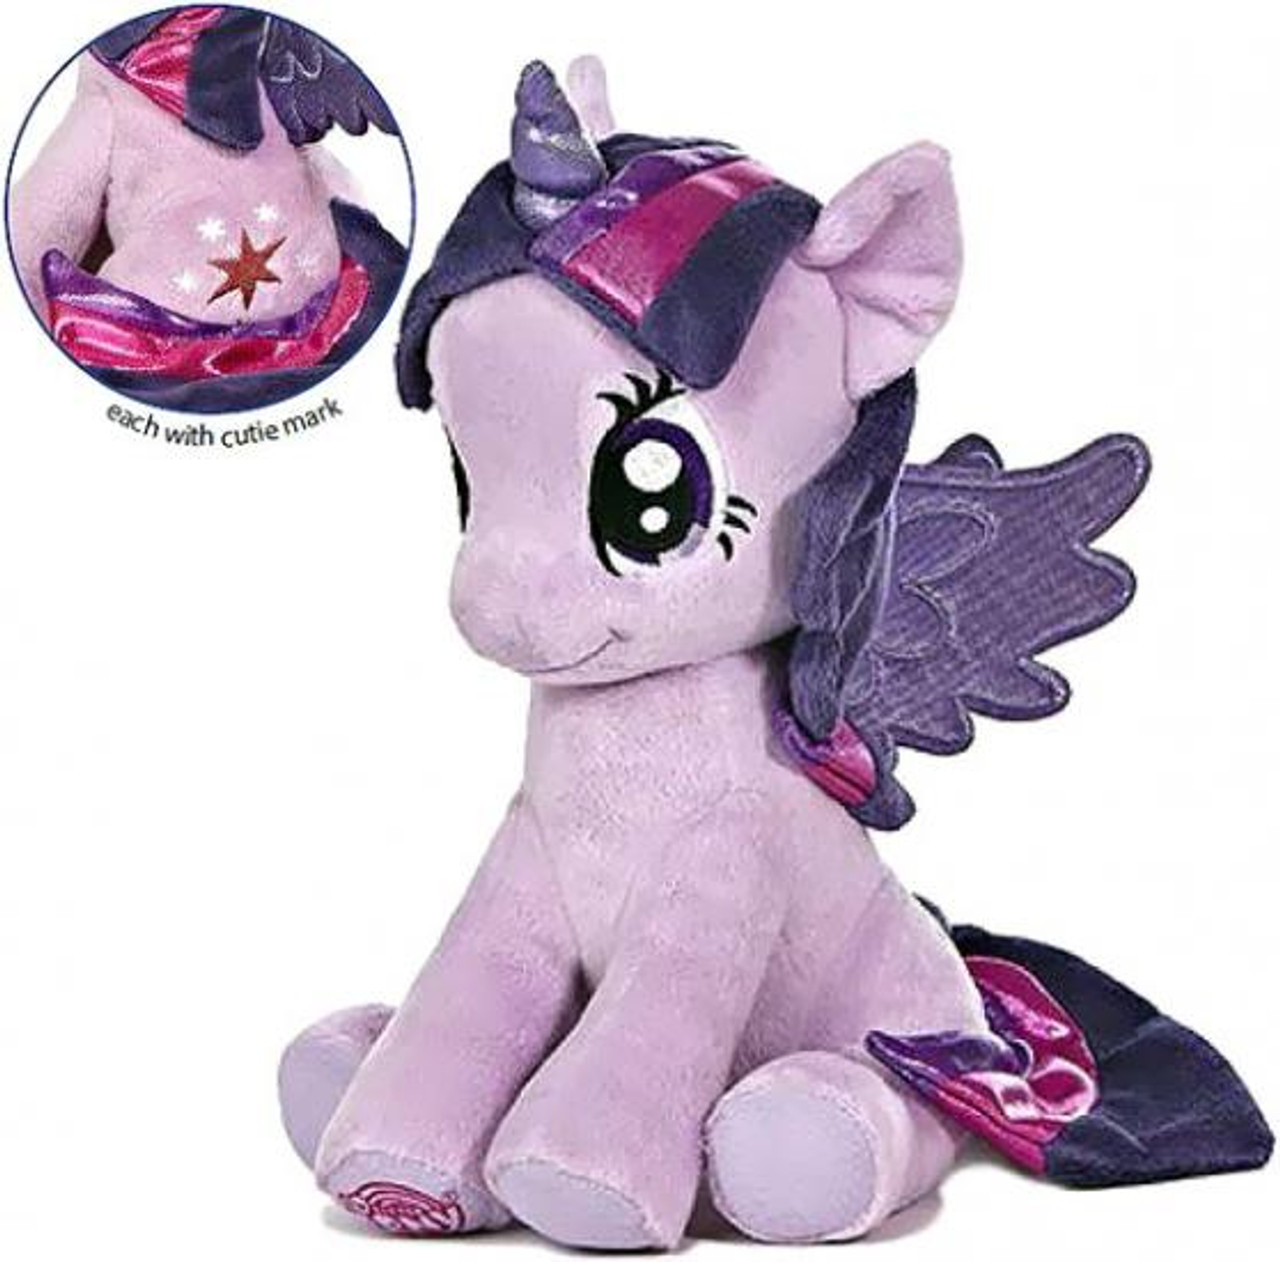 twilight sparkle plush toy